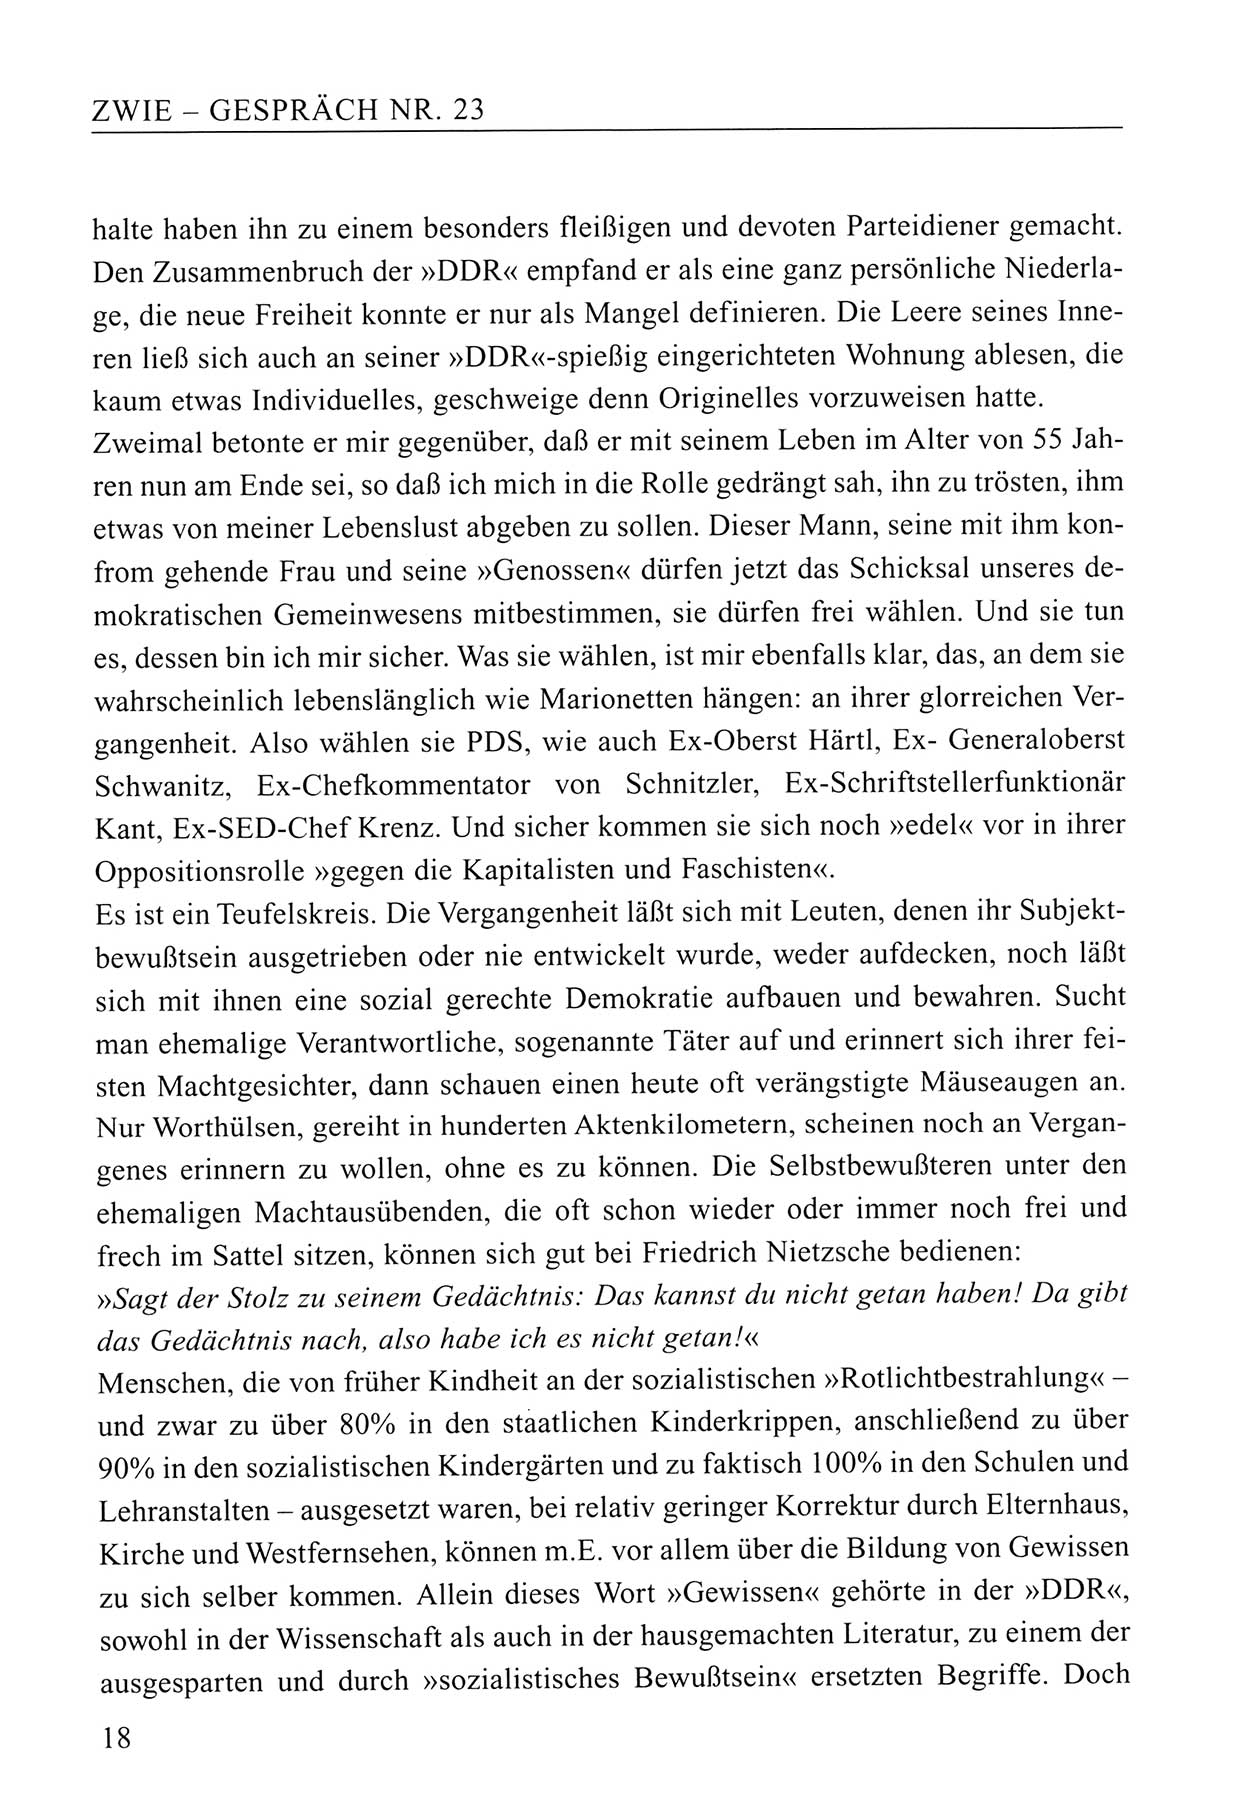 Zwie-Gespräch, Beiträge zum Umgang mit der Staatssicherheits-Vergangenheit [Deutsche Demokratische Republik (DDR)], Ausgabe Nr. 23, Berlin 1994, Seite 18 (Zwie-Gespr. Ausg. 23 1994, S. 18)